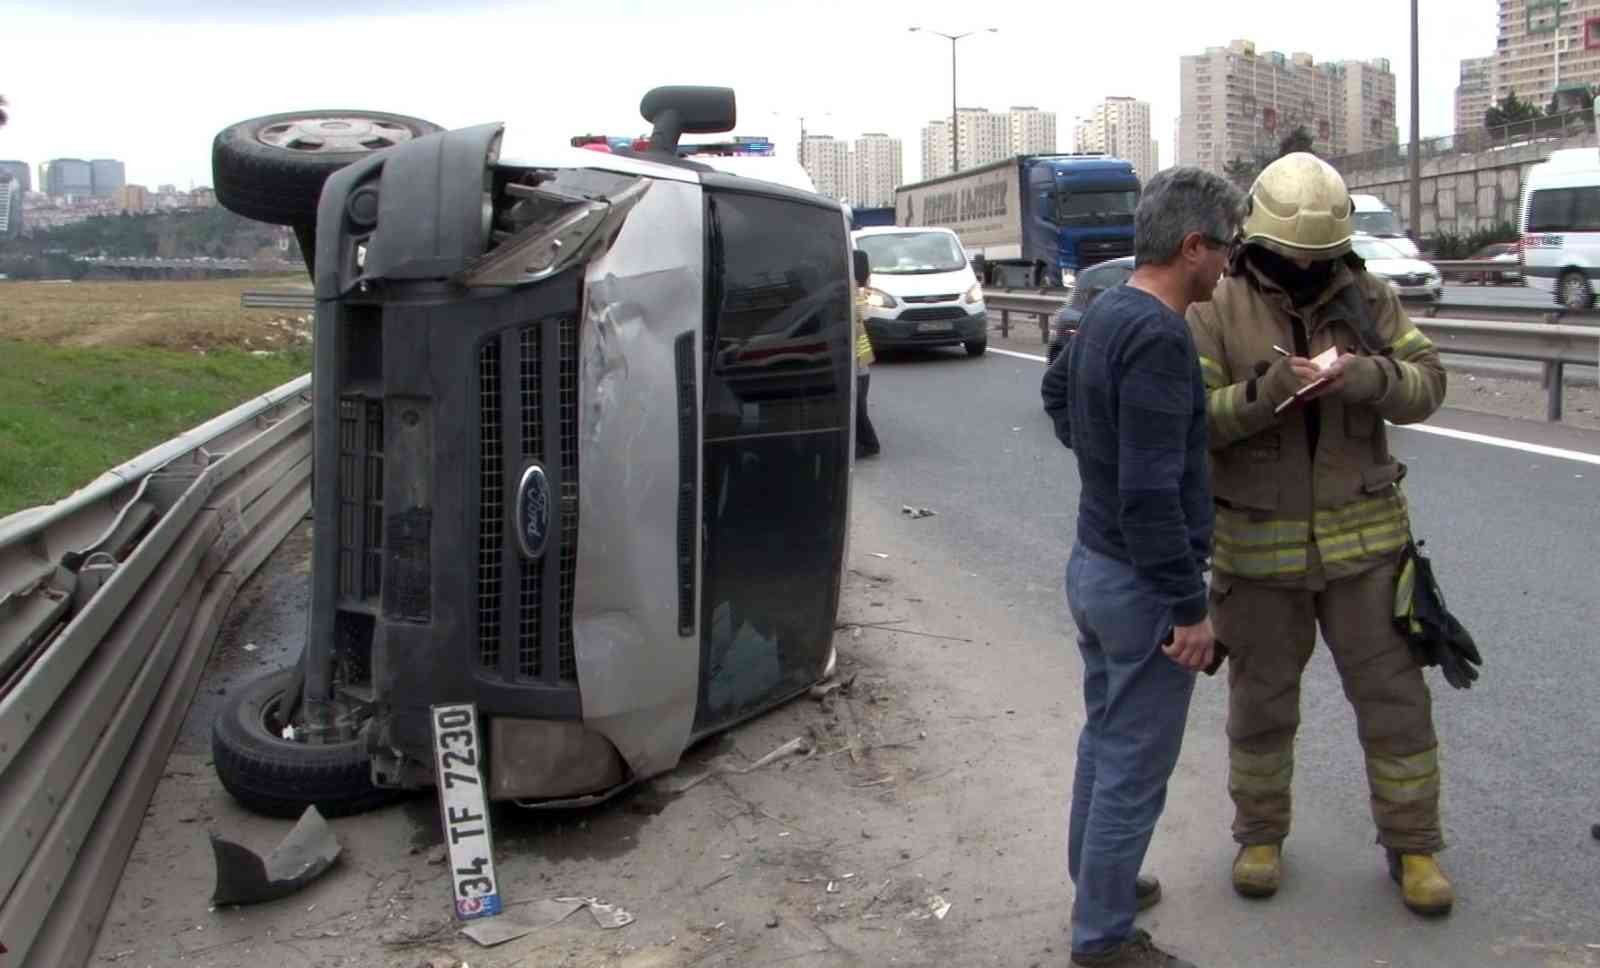 Avcılar Tem Otoyolunda para yüklü zırhlı araç devrildi: 1 yaralı #istanbul